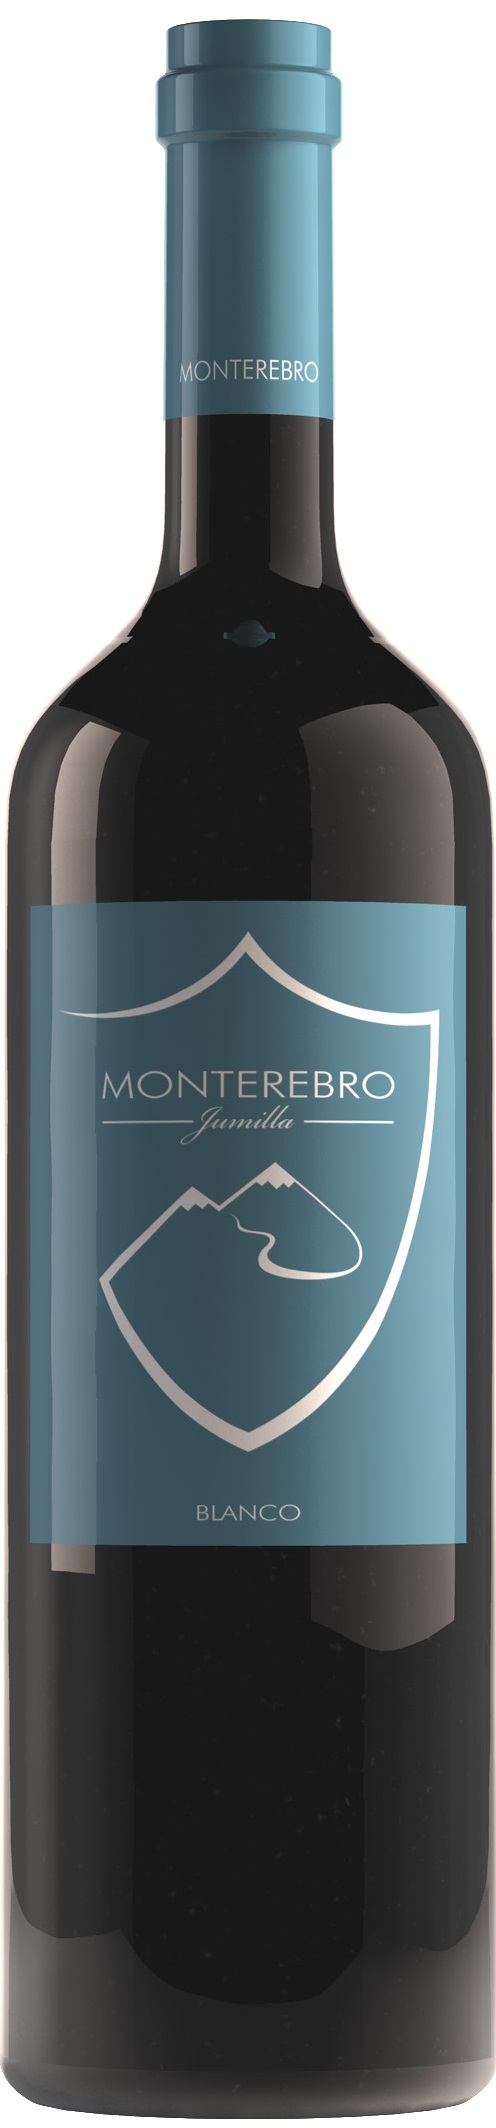 Logo del vino Monterebro Blanco